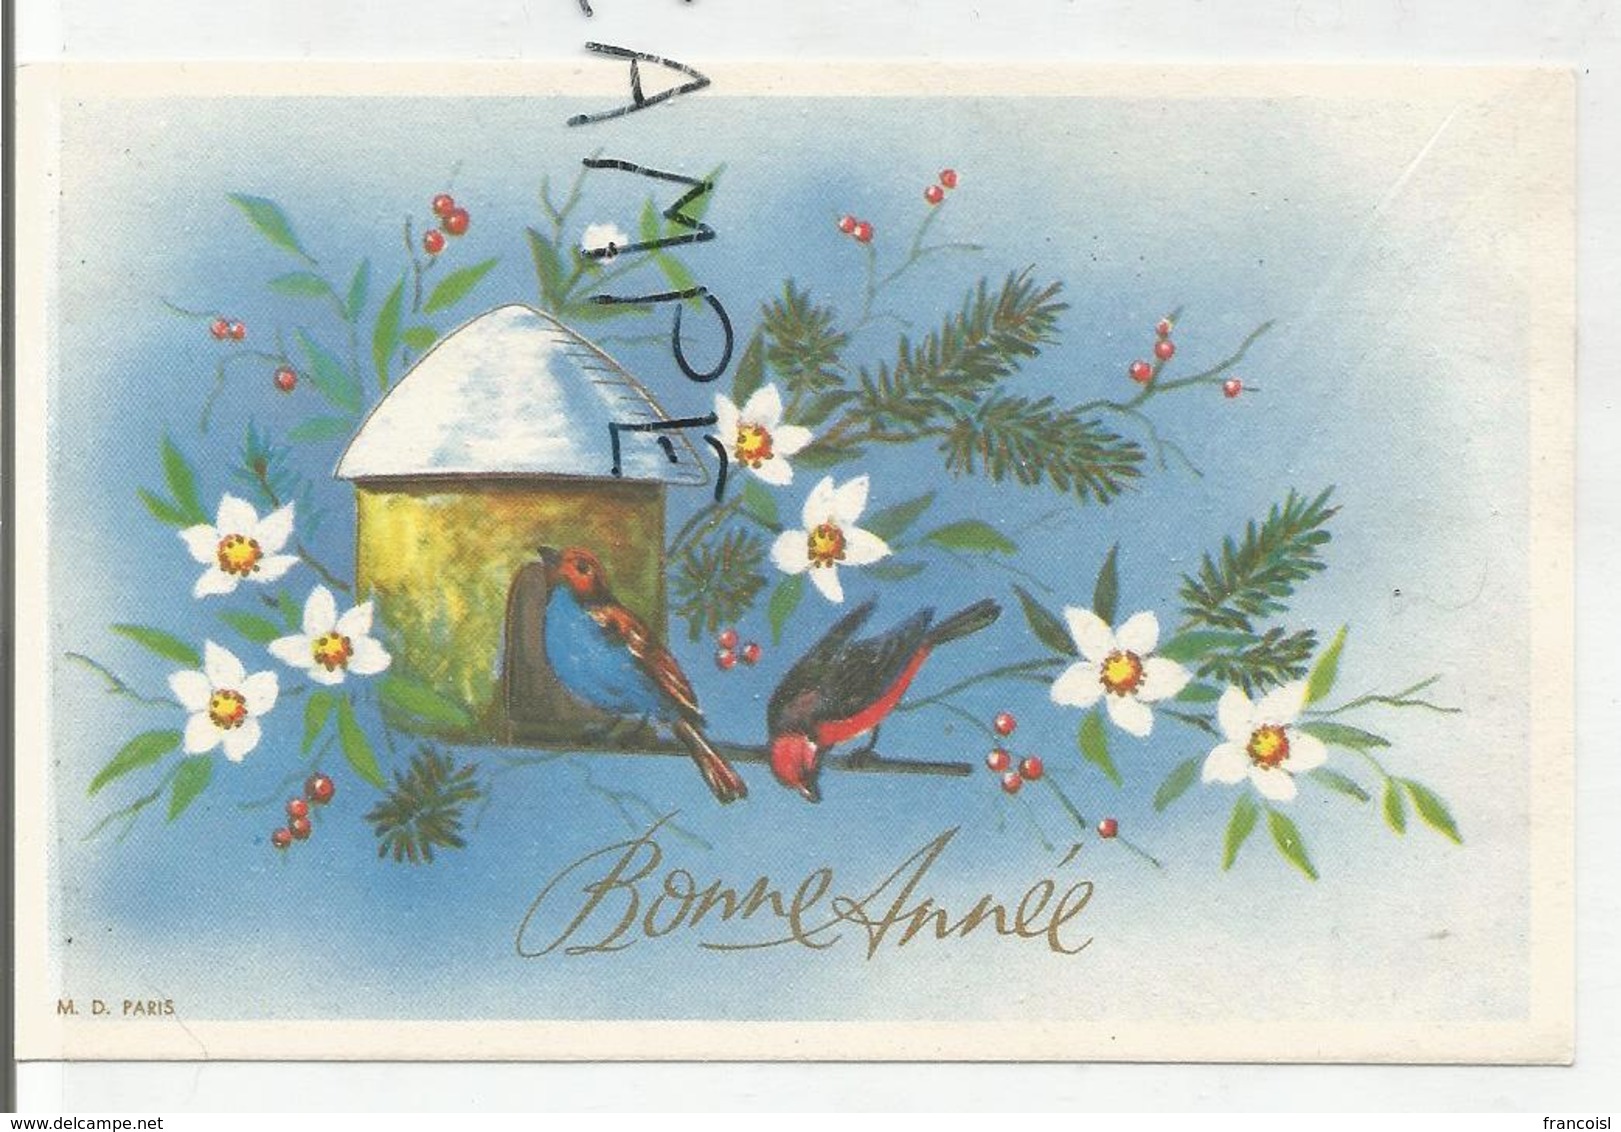 Carte De Vœux. Bonne Année. Deux Oiseaux Sur Un Nichoir, Fleurs Et Branches De Sapin. - Nouvel An